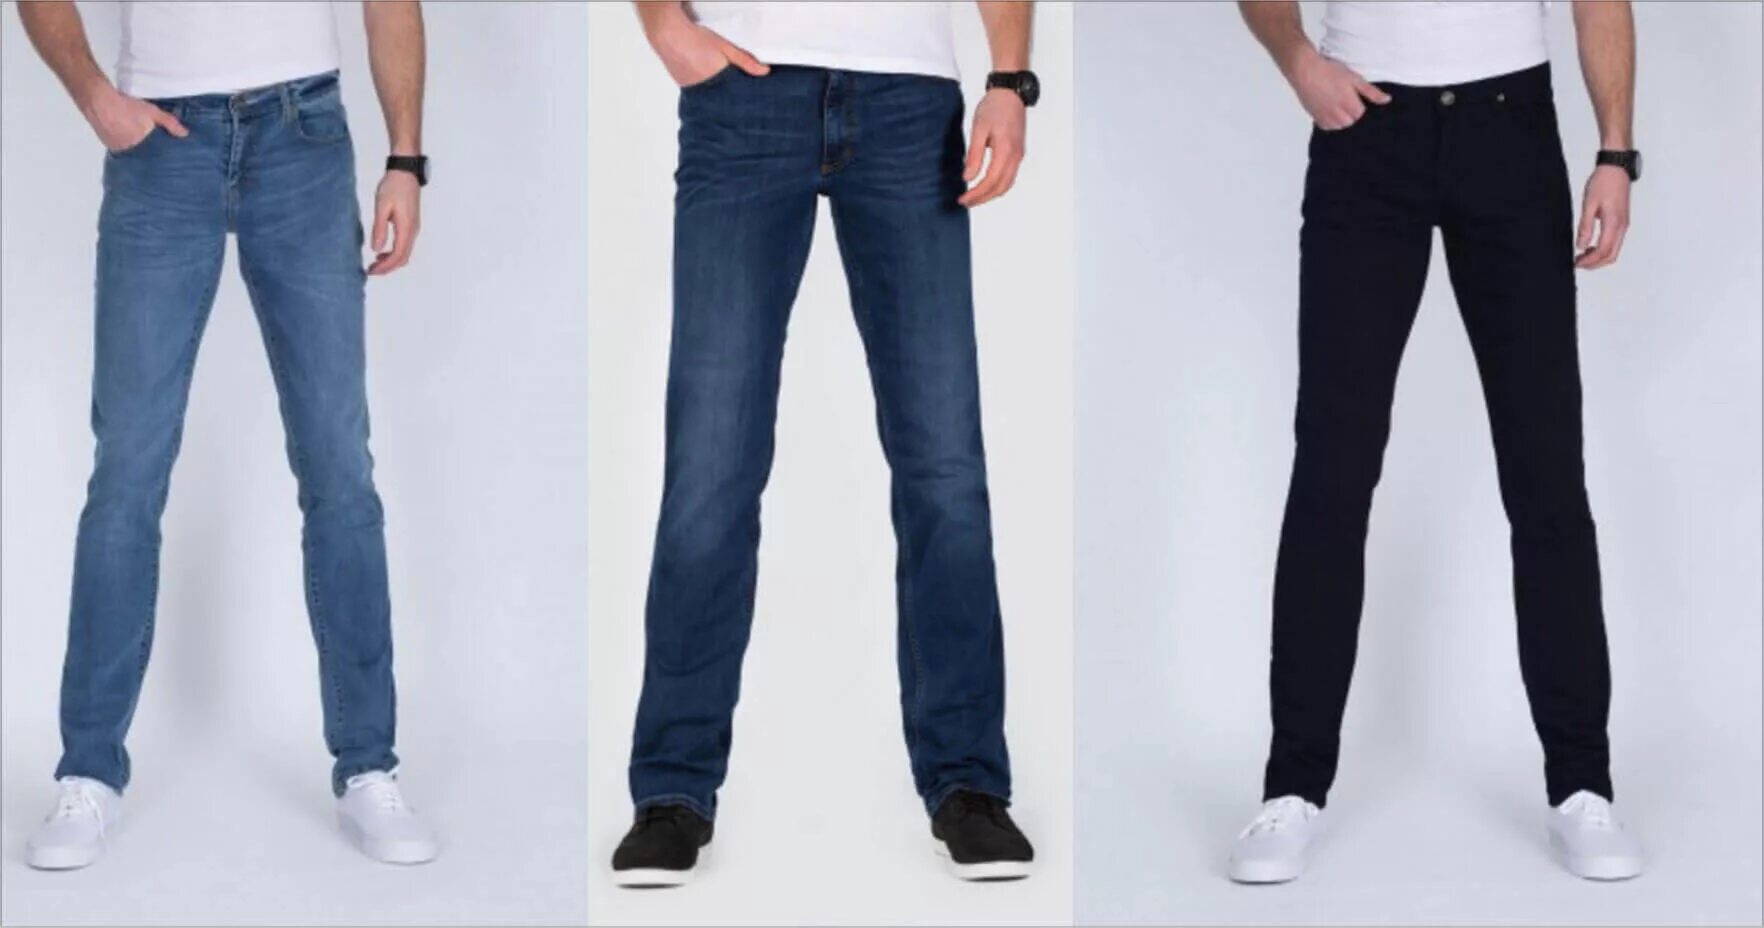 Какая длина должна быть у джинс. Правильная длина джинс. Правильная длина мужских джинс. Длина джинсов у мужчин. Джинсы мужские длина правильная.